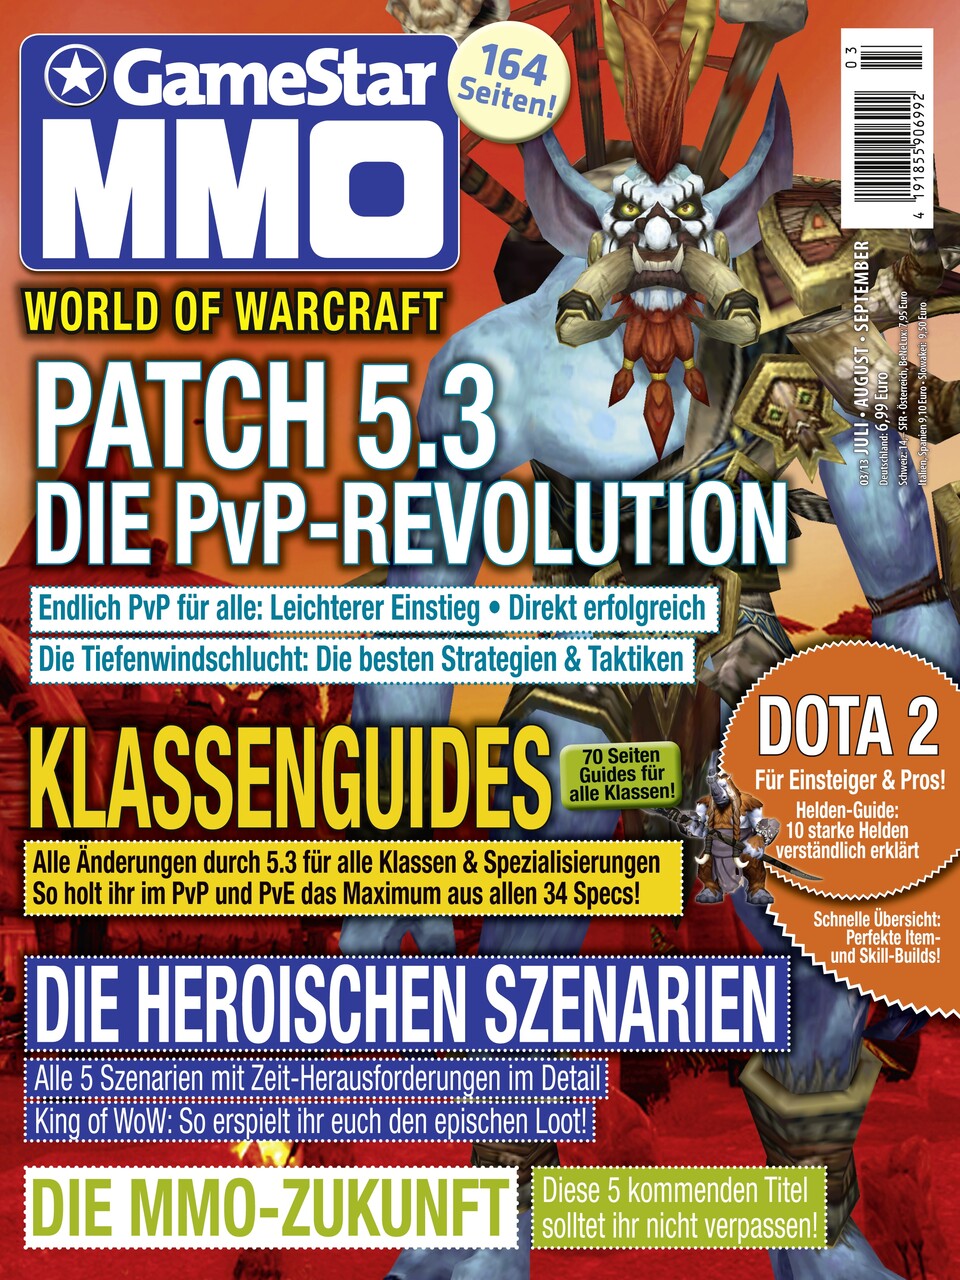 Gamestar MMO-Magazin ab 26.06. am Kiosk